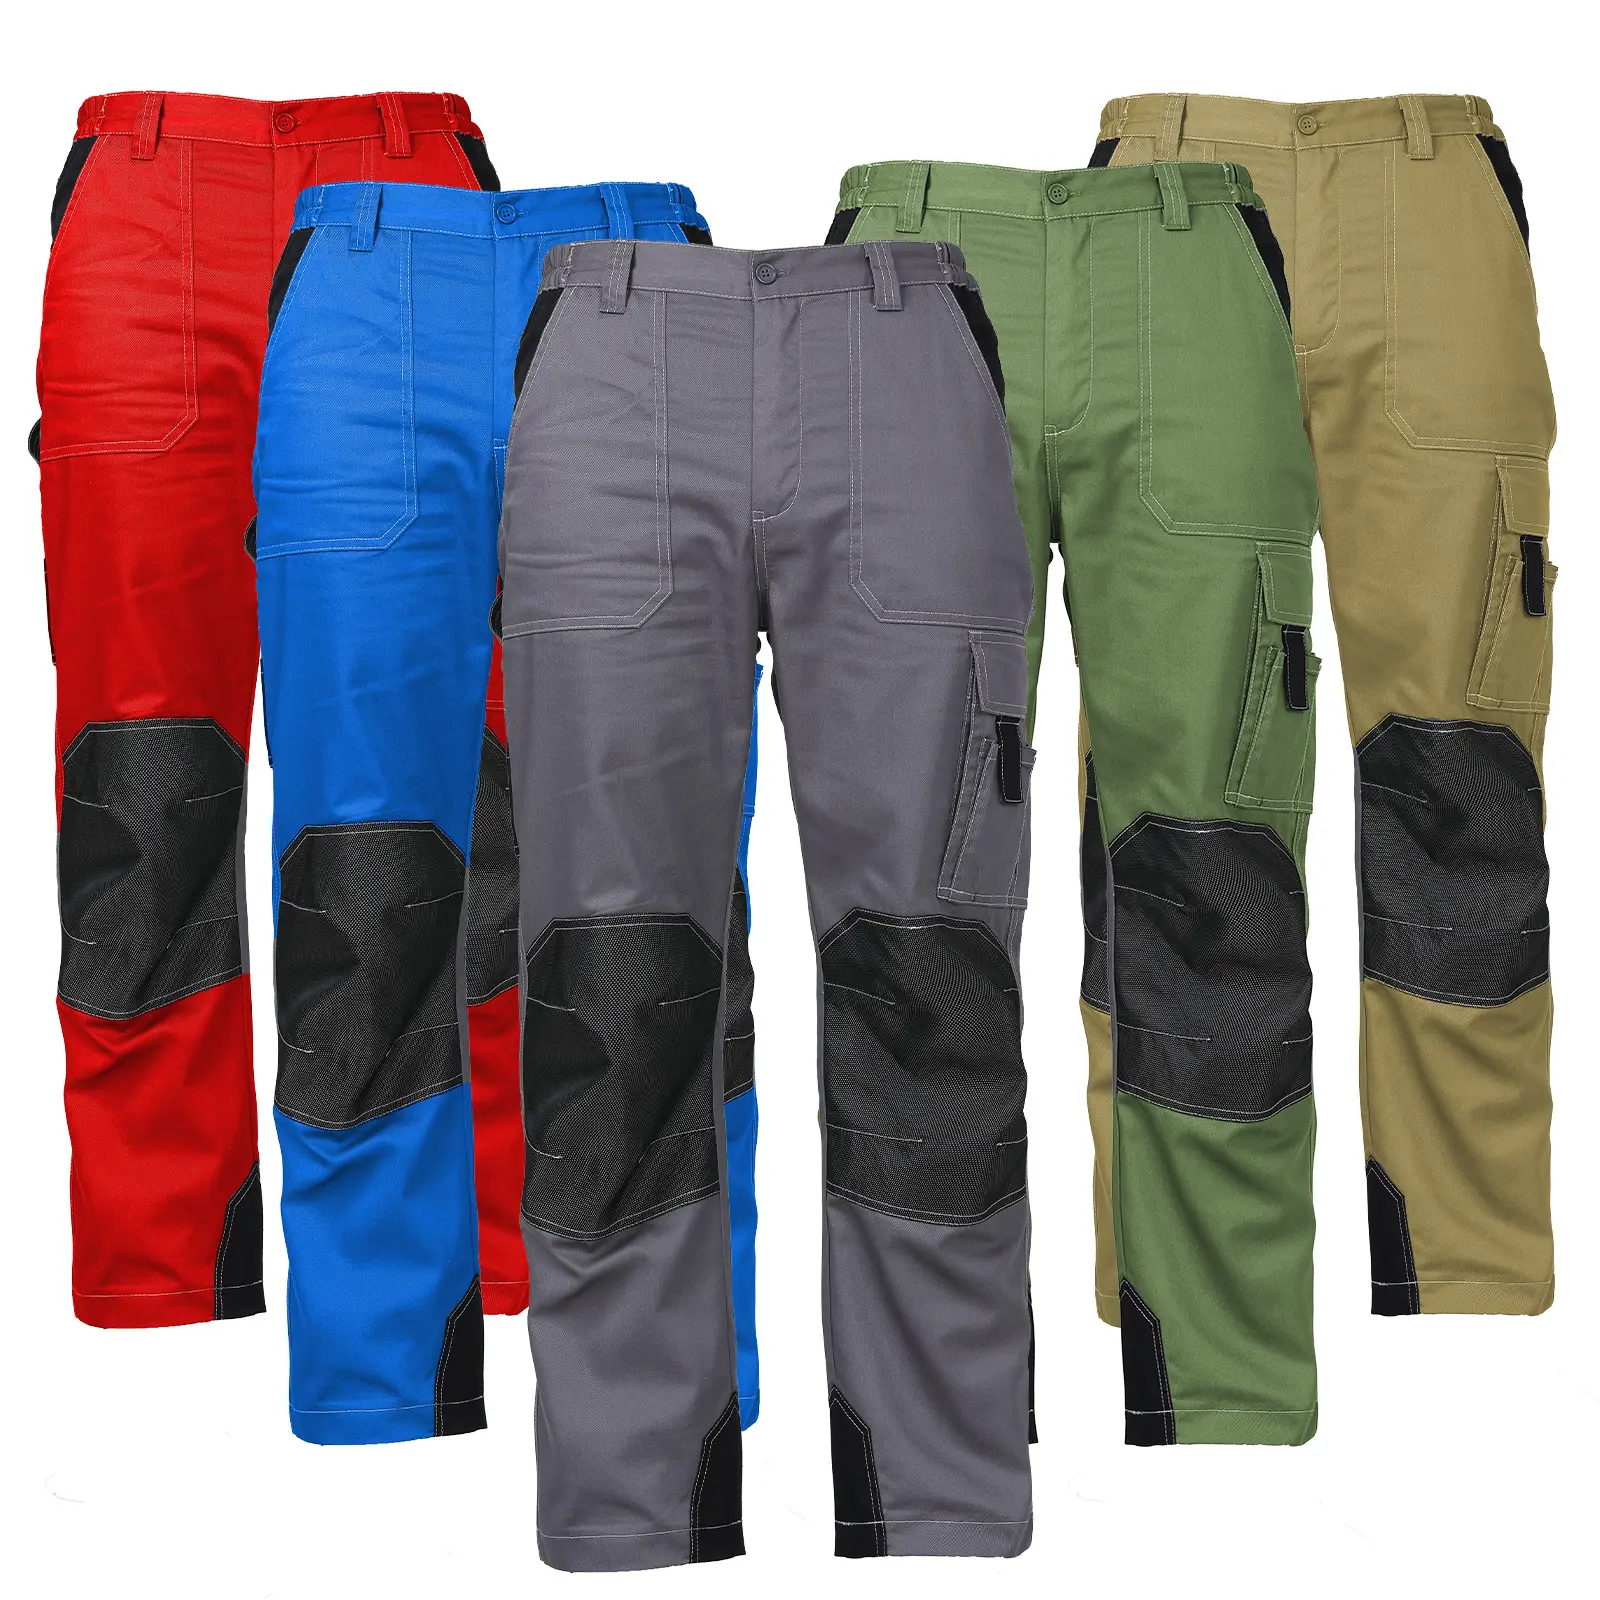 Amazon Venda quente de Alta Qualidade Calças de Multi-bolsos Calças de Trabalho dos homens Calças Calças Dos Homens Calças de Trabalho Workwear